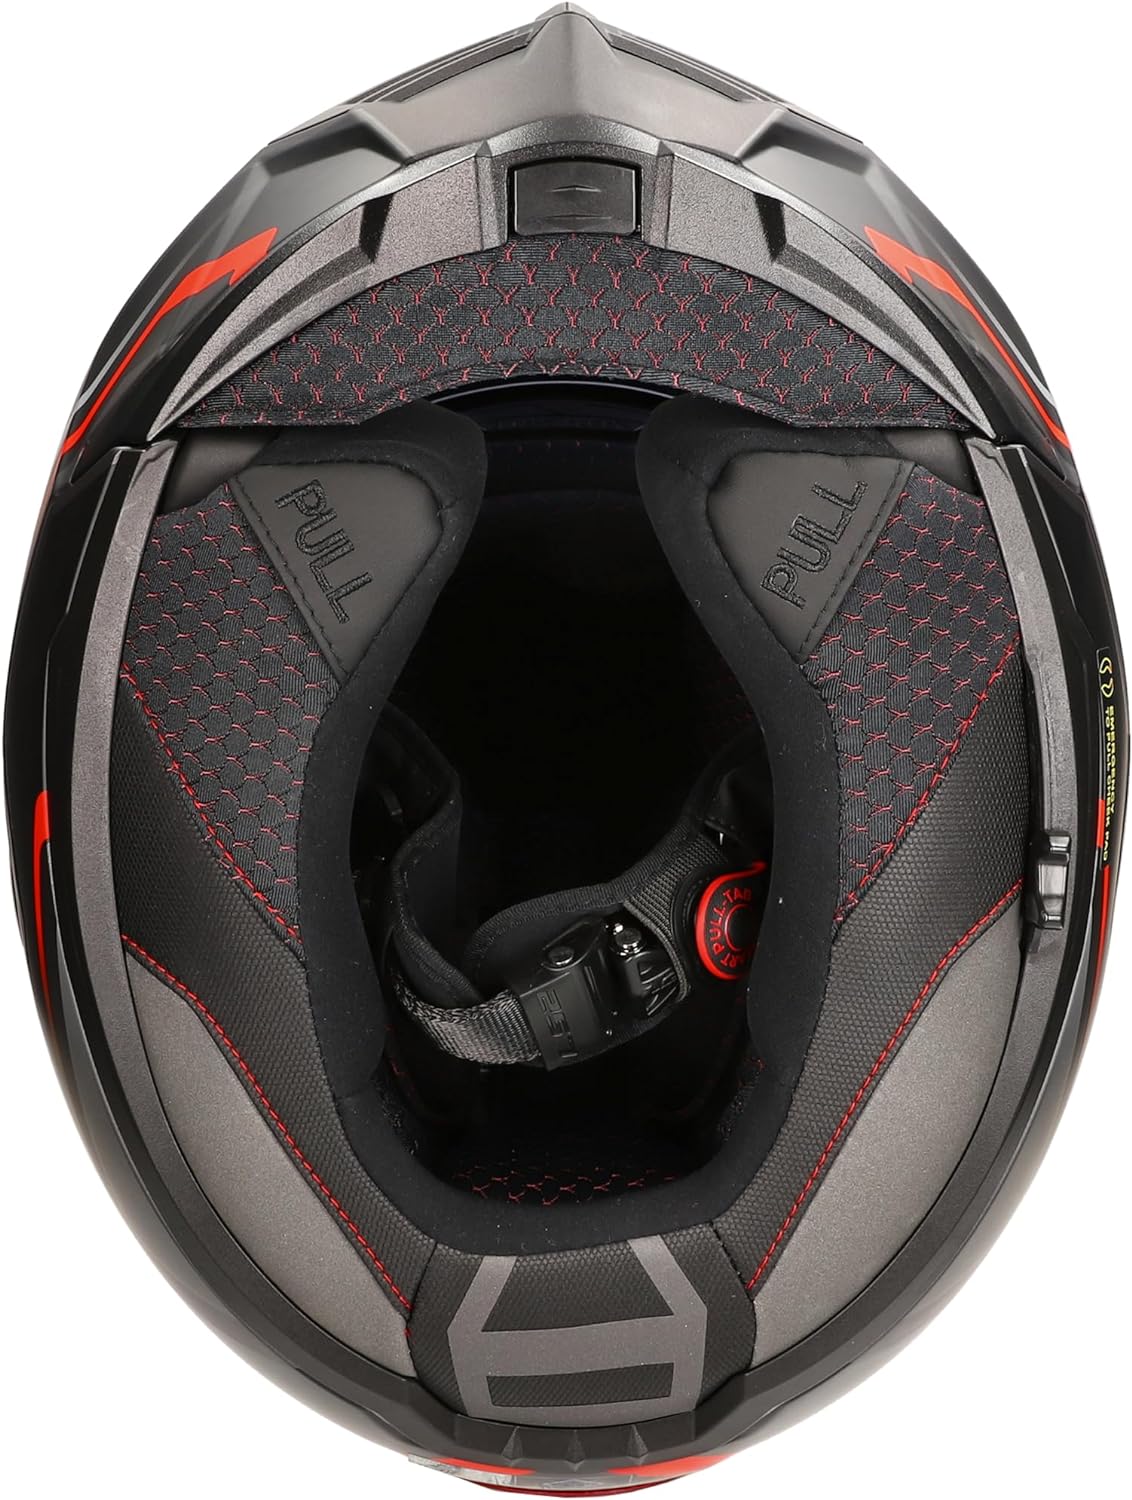 Riderwear | LS2 FF906 ADVANT KUKA Modular Helmet